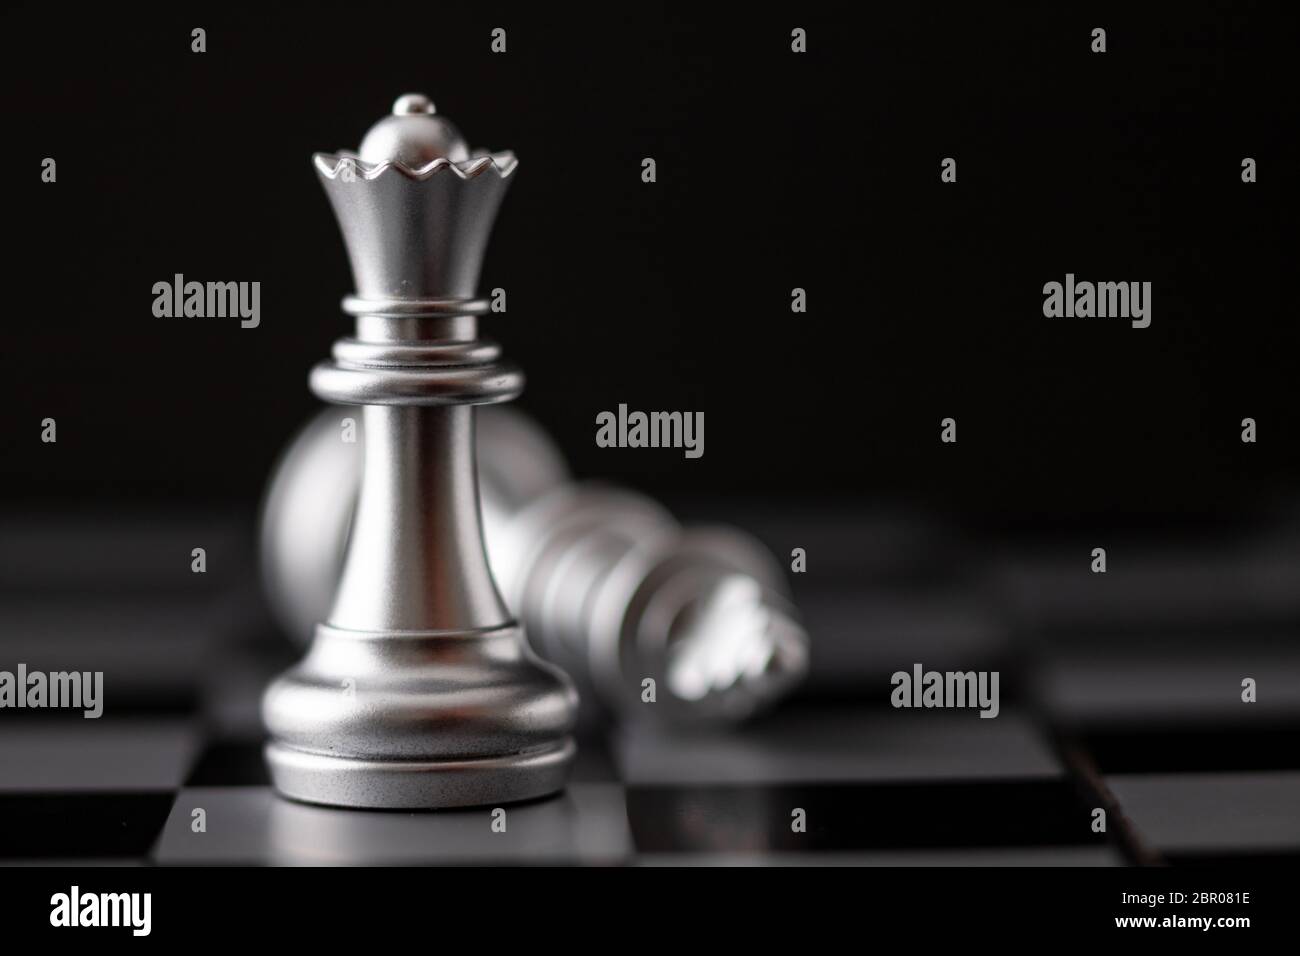 La regina d'argento in piedi e il re che cade in gioco sulla scacchiera Foto Stock